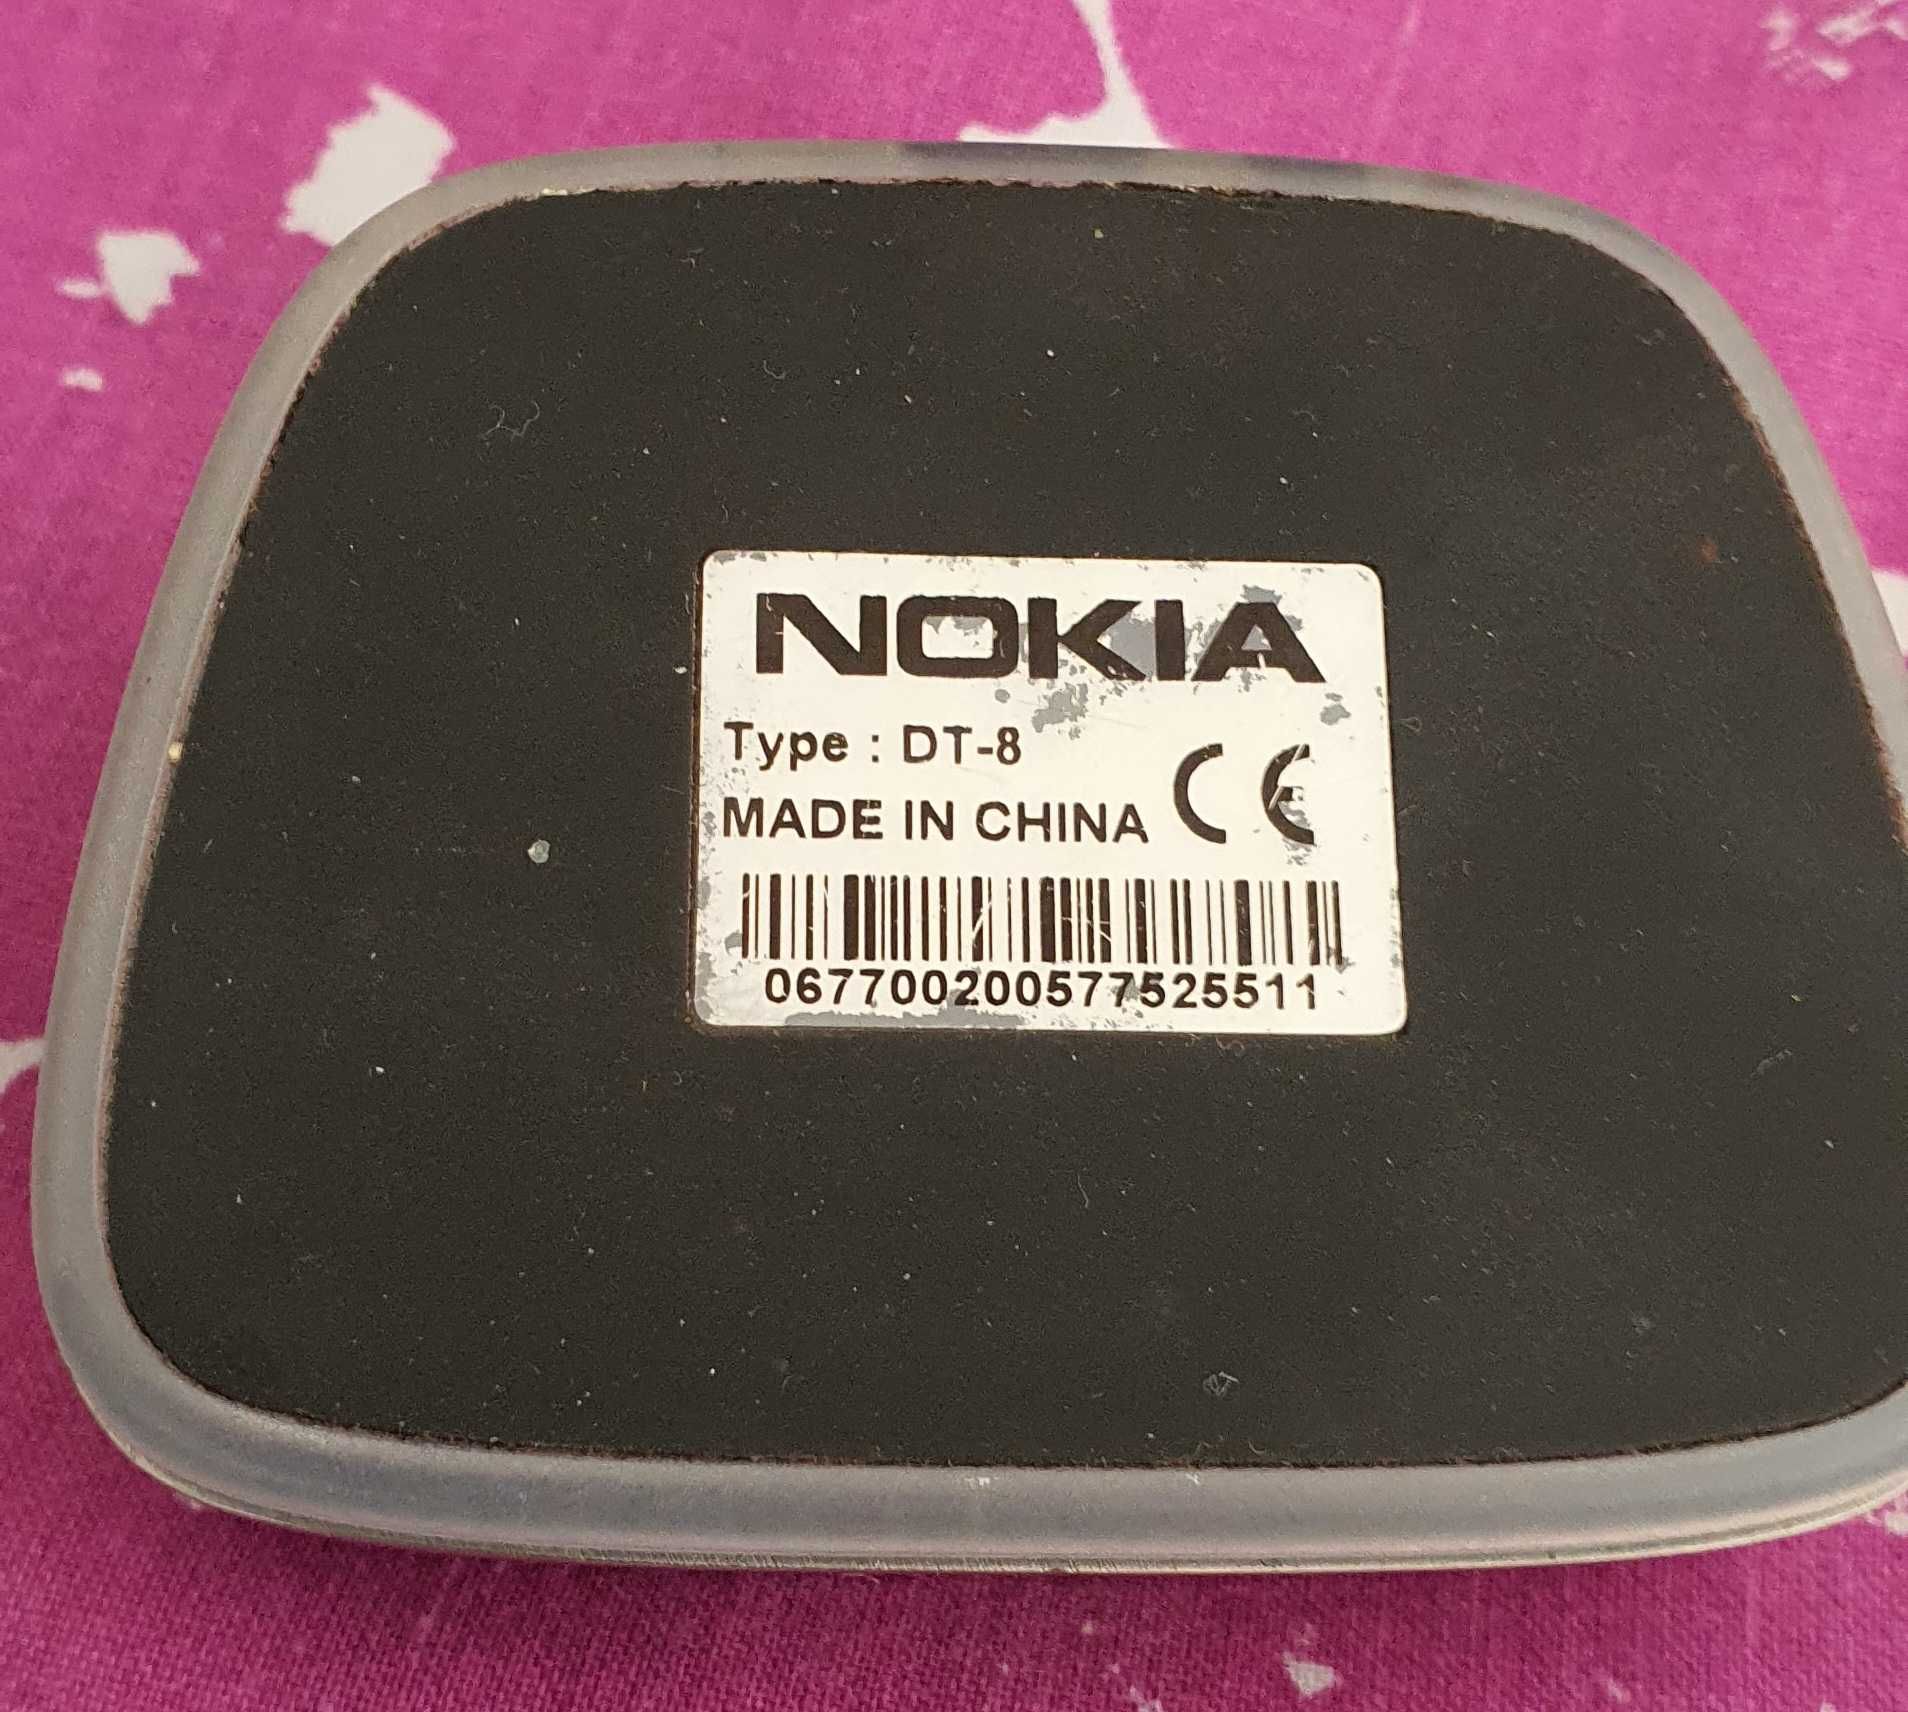 Stand Nokia DT-8/DT-10 Nokia N91 8800 sirocco arte luna